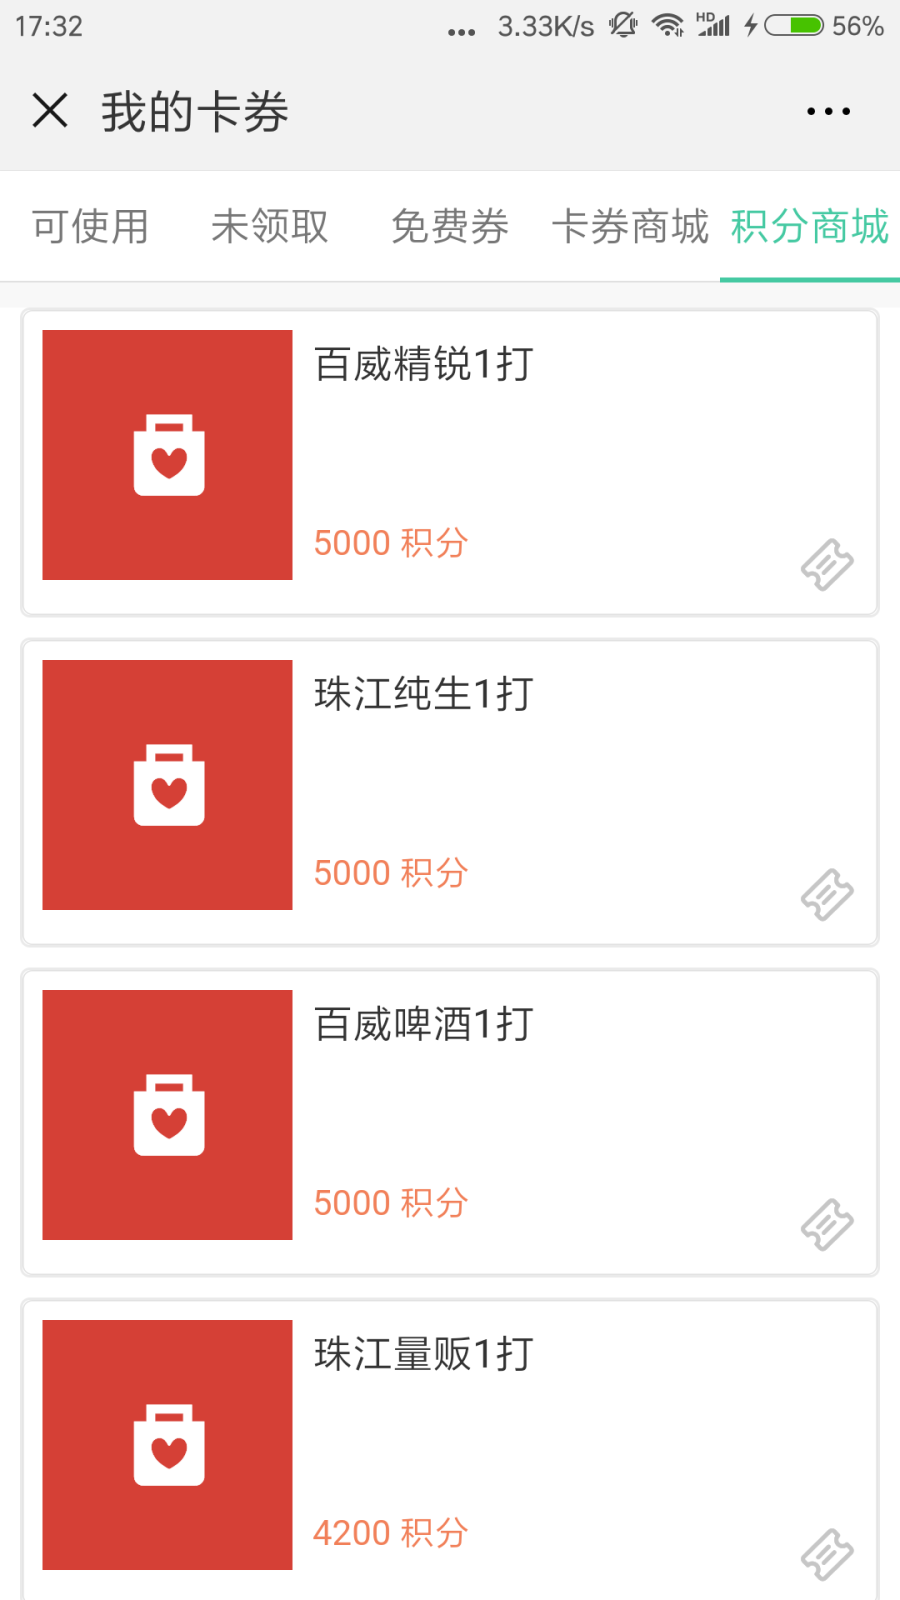 Screenshot_2018-08-27-17-32-11-557_com.tencent.mm.png